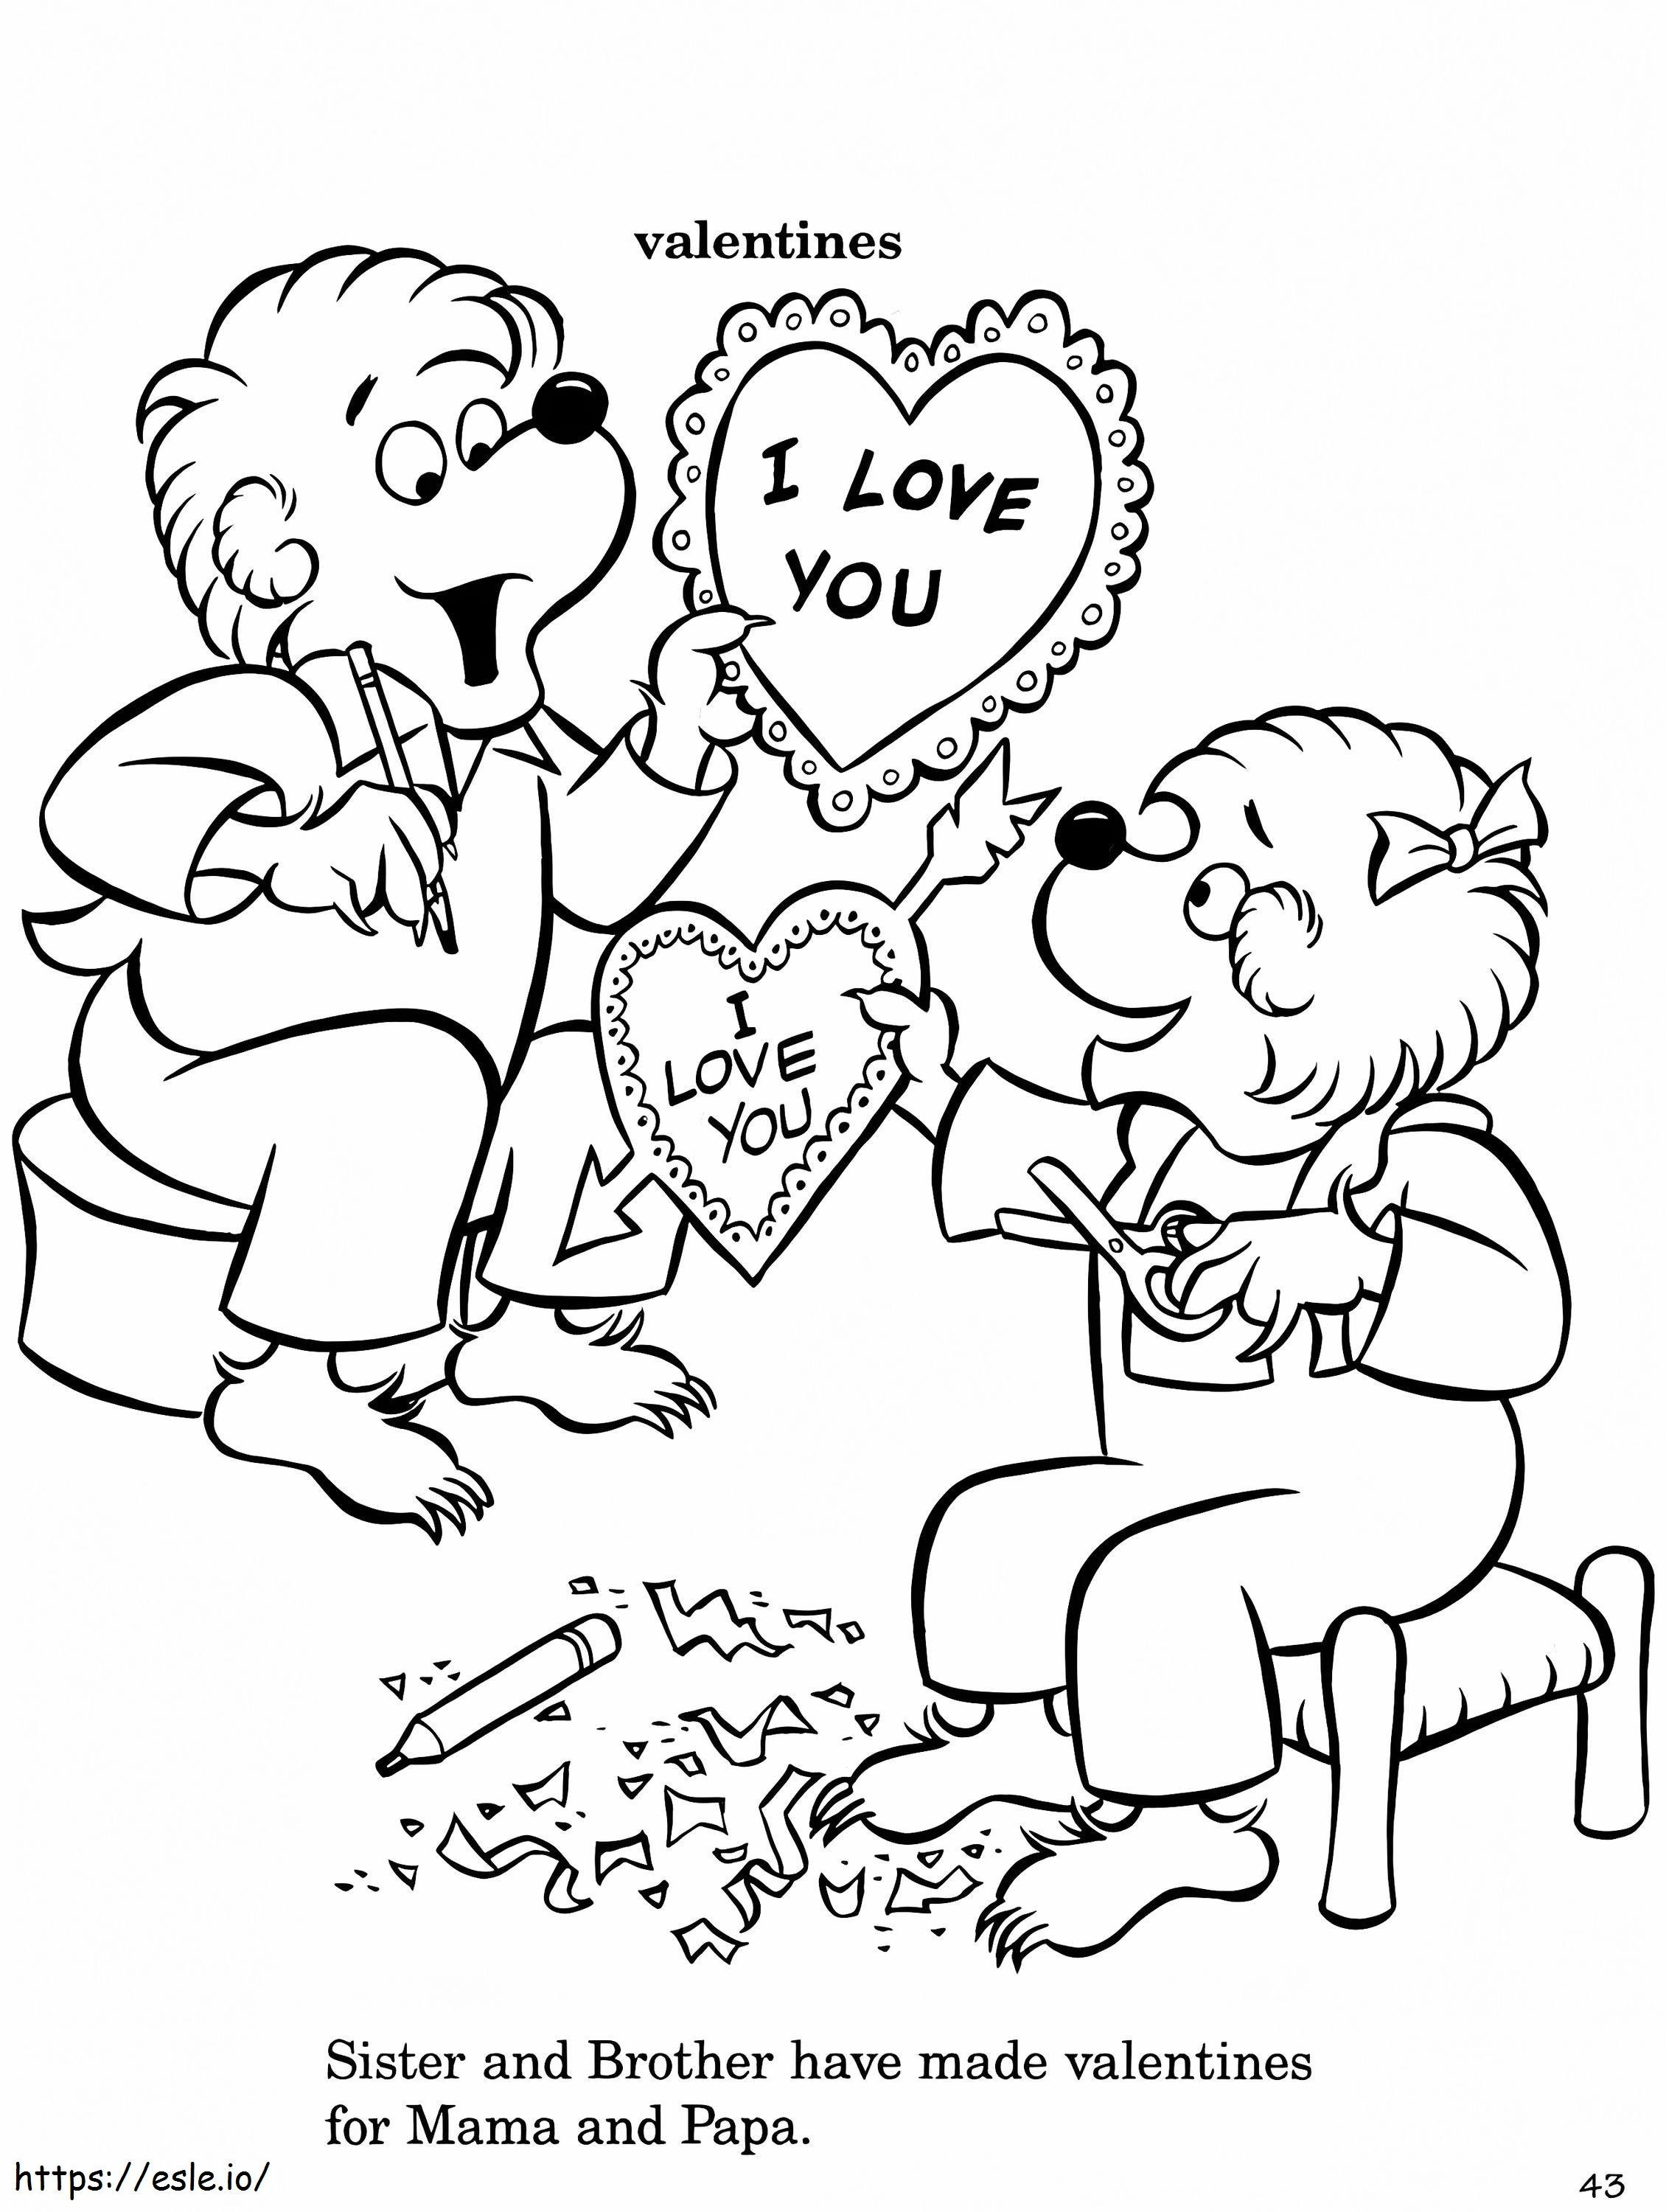 Urși Berenstain cu Valentine de colorat